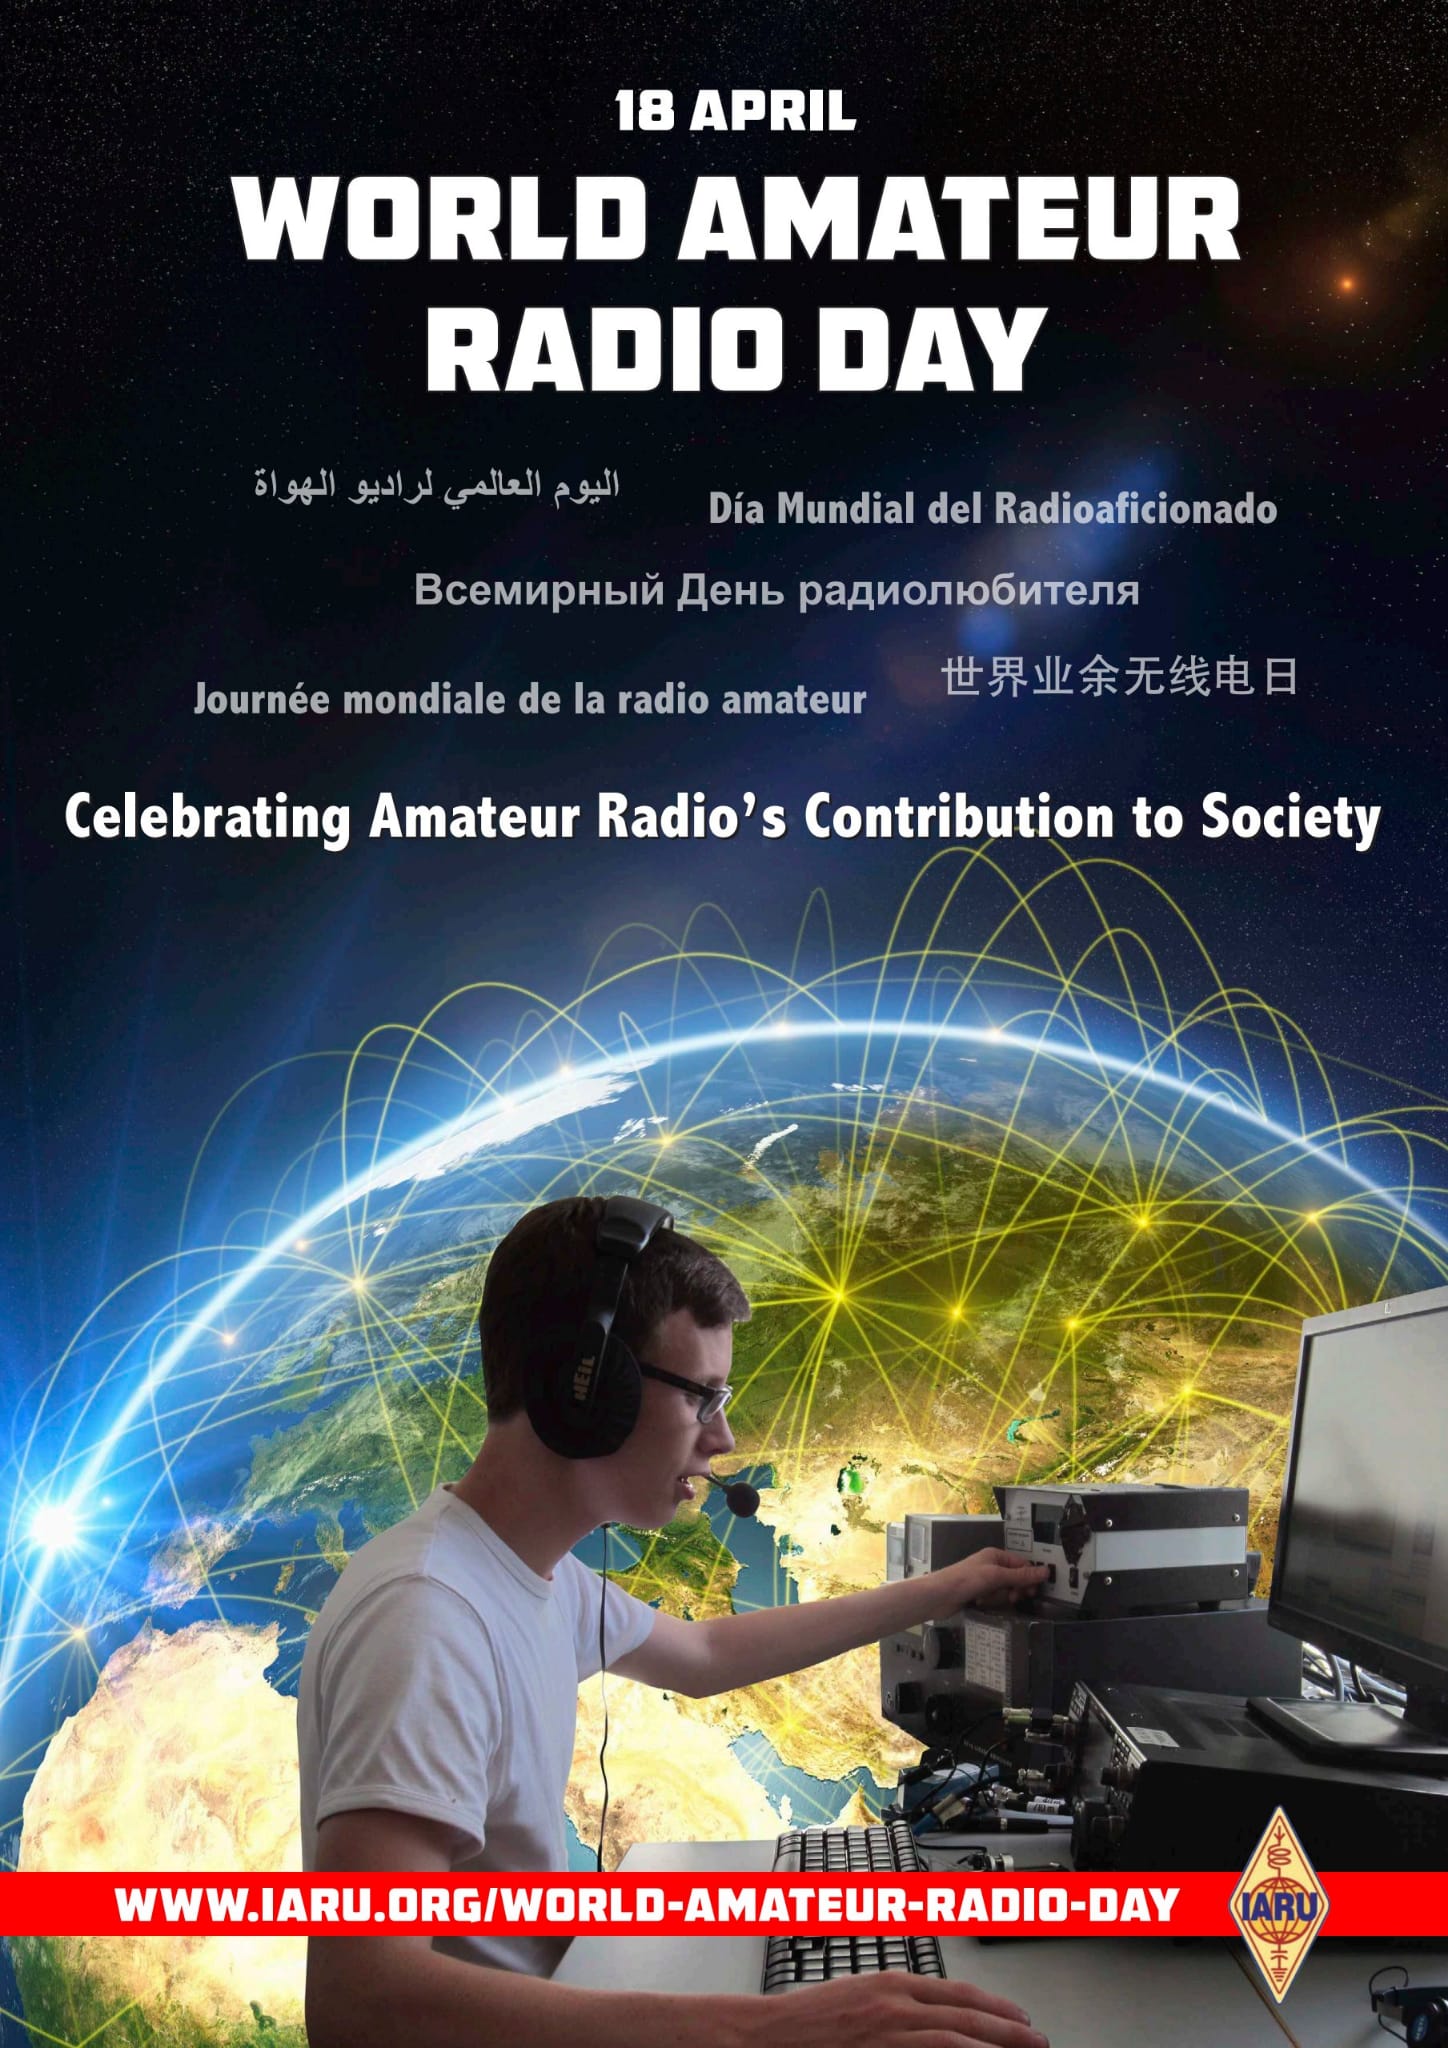 Día Mundial del Radioaficionado. CQ CQ ¿Me copias?